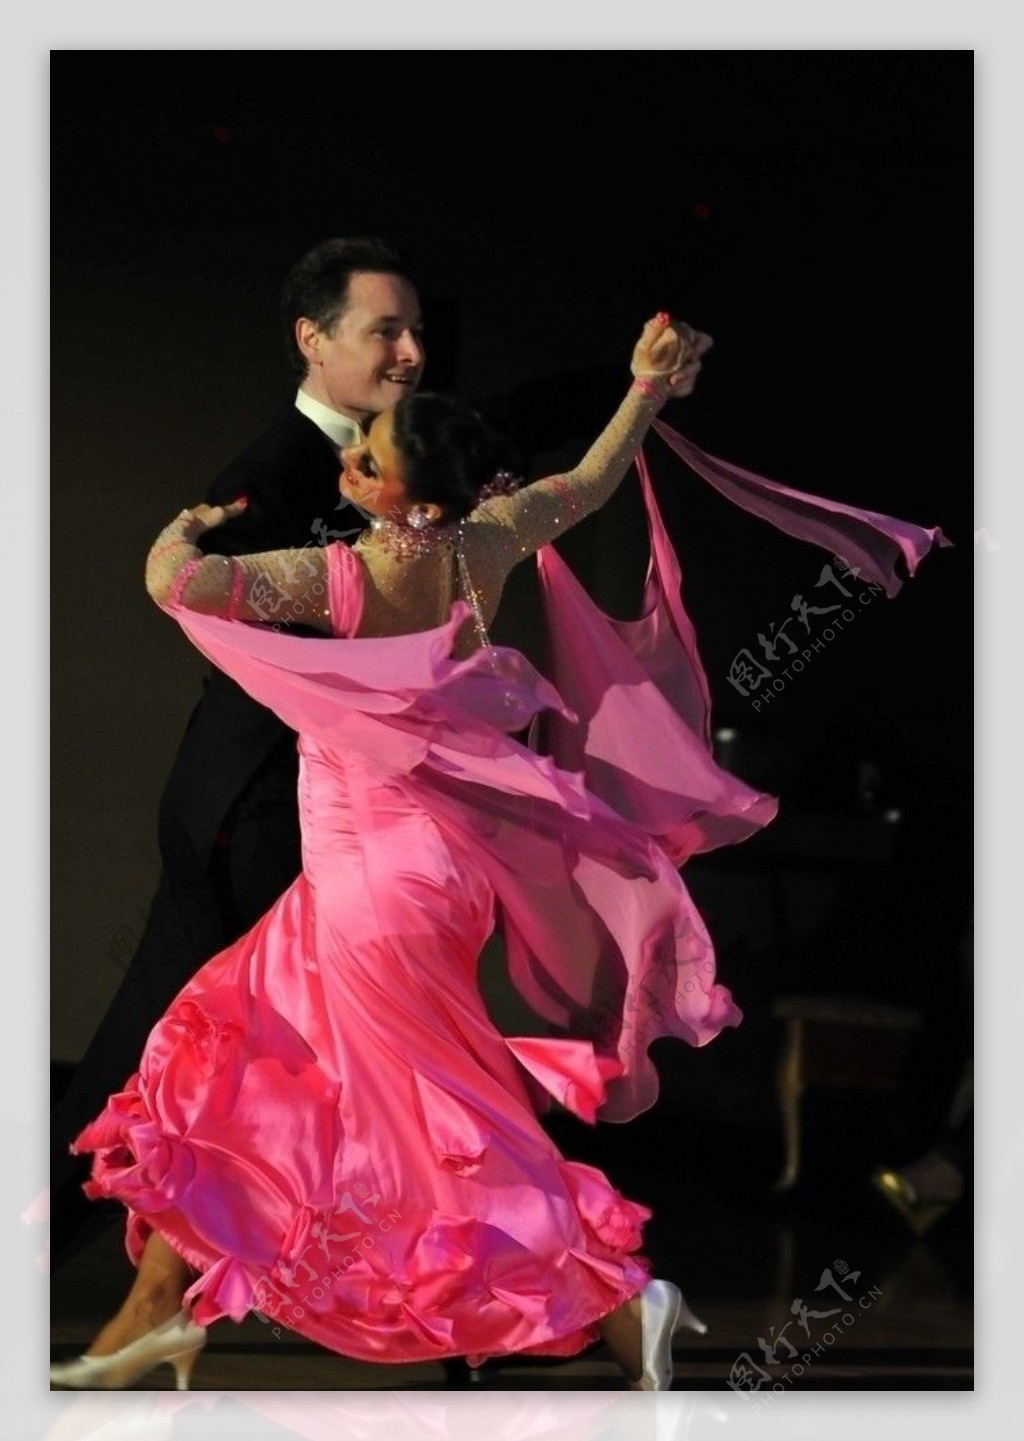 交际舞体育舞蹈拉丁舞红裙男女舞者舞蹈图片